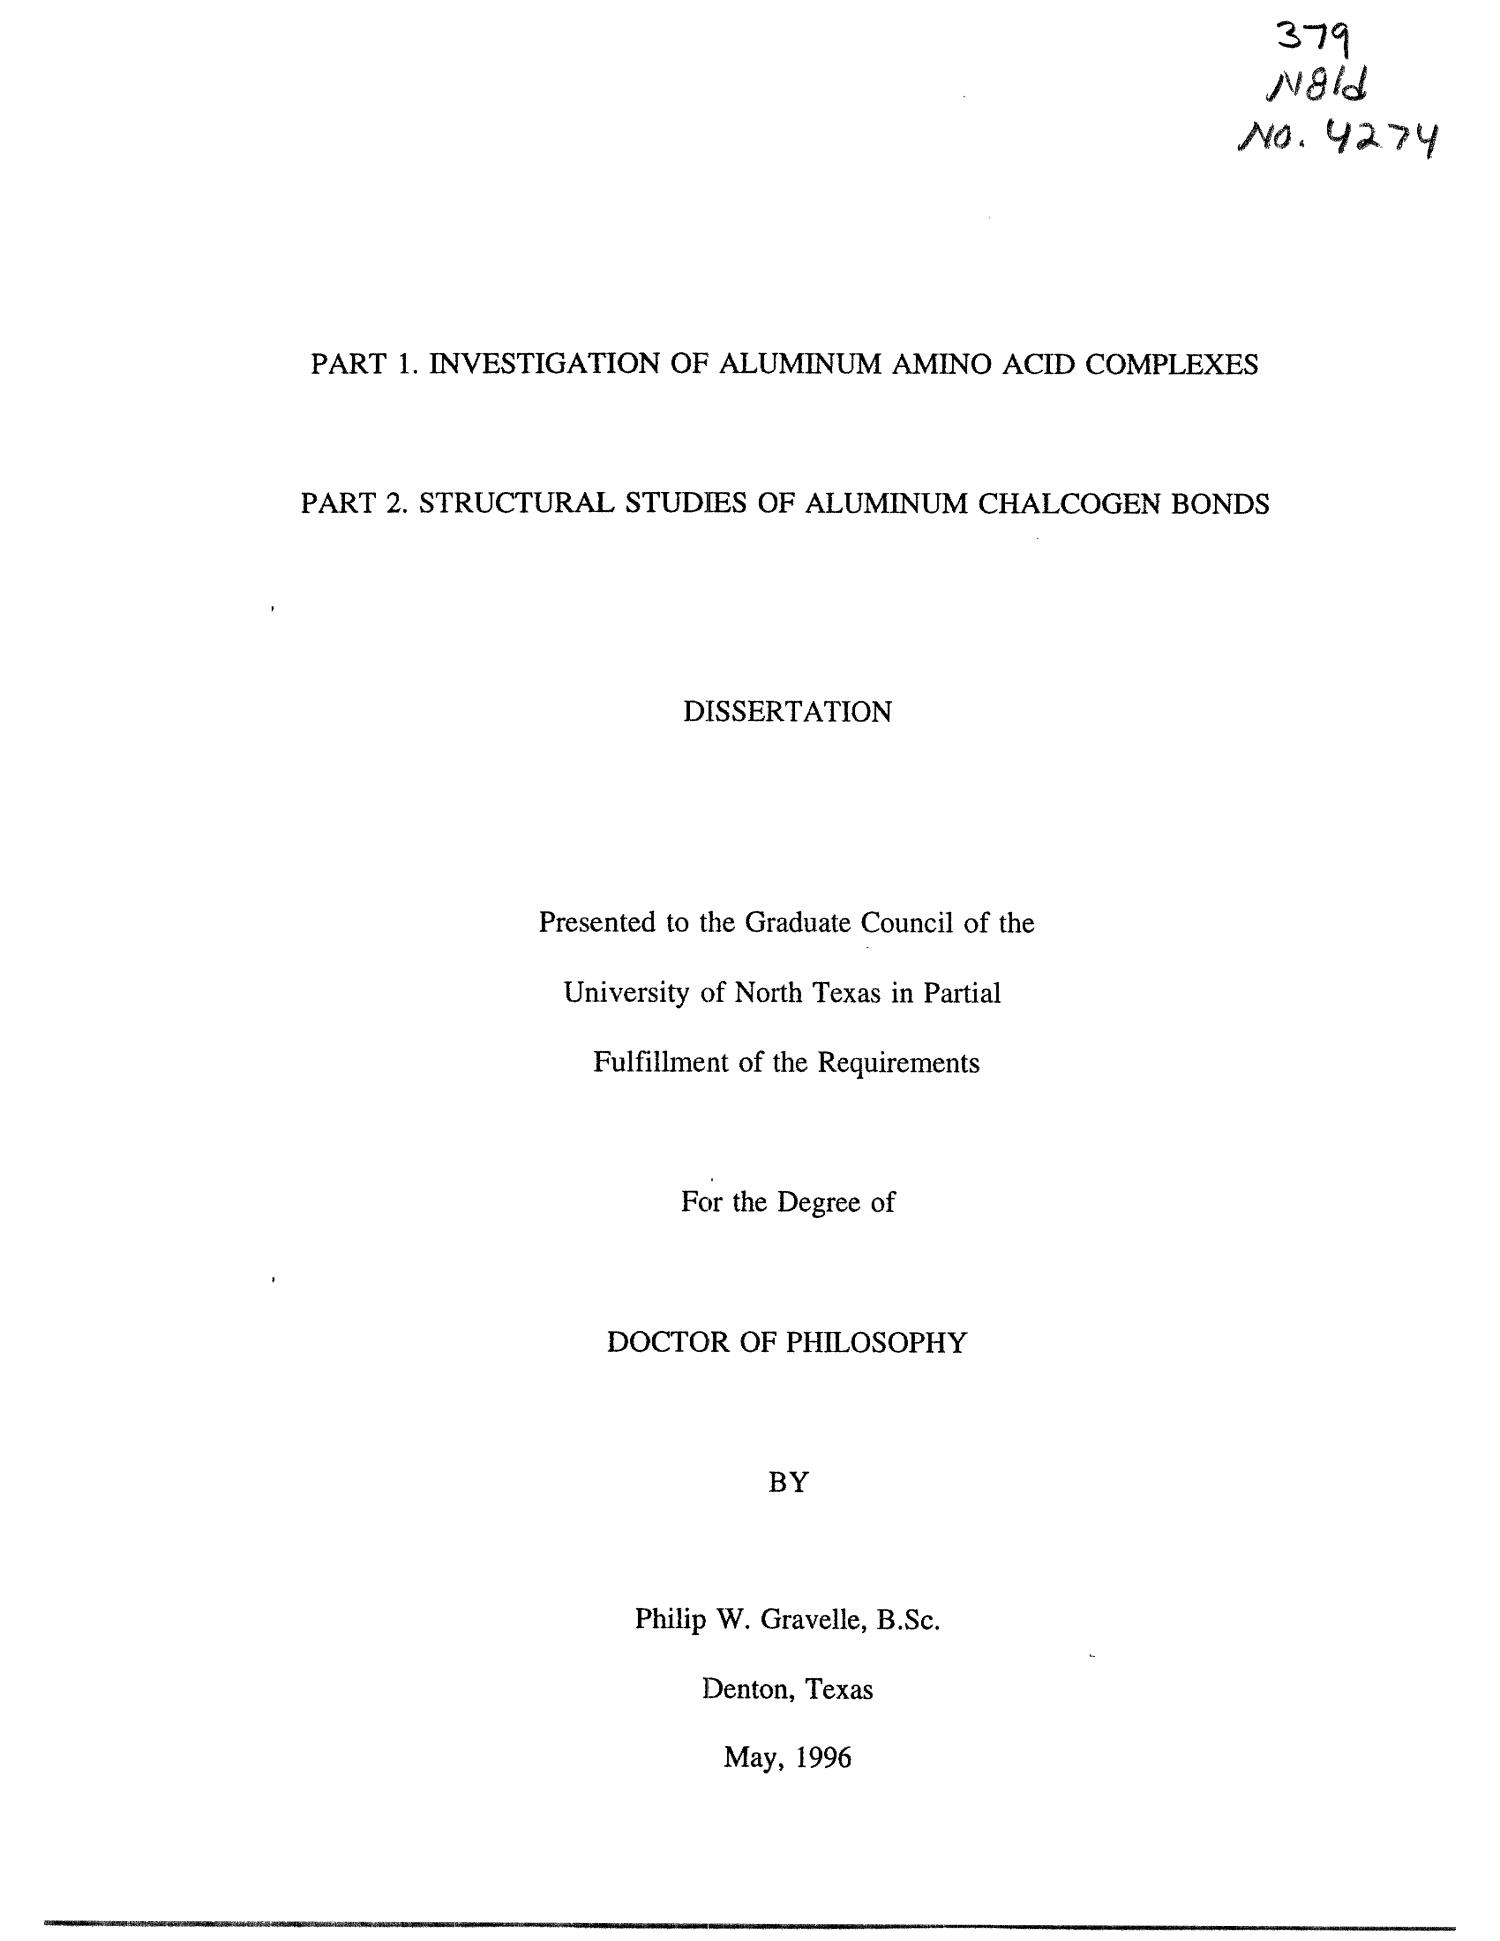 Part 1. Investigation of Aluminum Amino Acid Complexes; Part 2. Structural Studies of Aluminum Chalcogen Bonds
                                                
                                                    Title Page
                                                